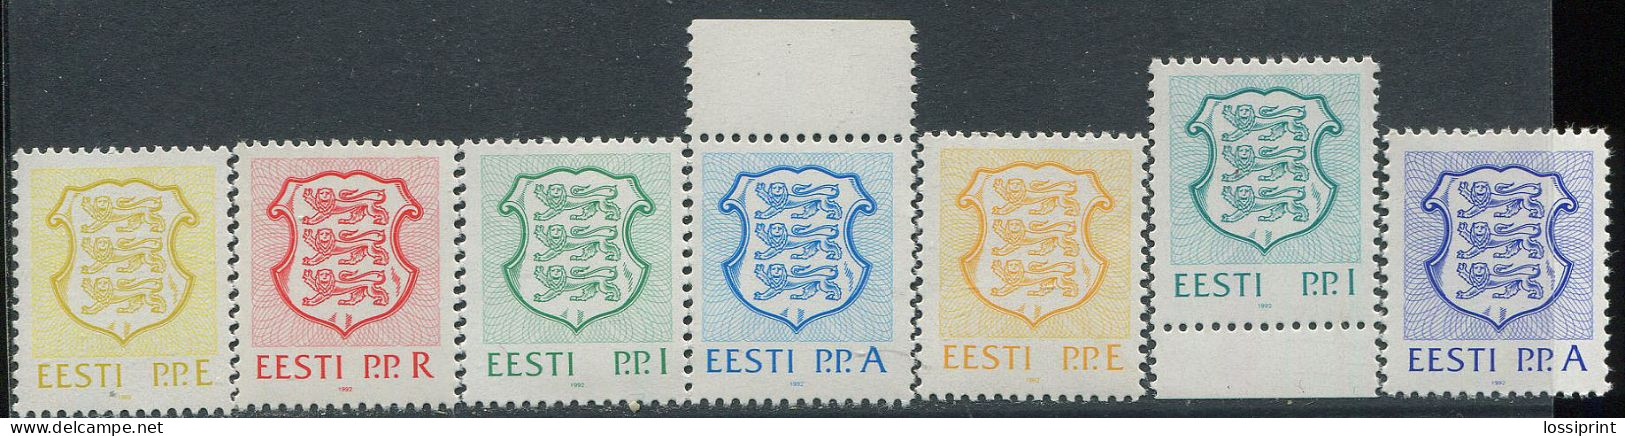 Estonia:Unused Stamps Serie Coat Of Arms, P.P.E, P.P.R, P.P.I And P.P.A Full Serie, 1992, MNH - Briefmarken